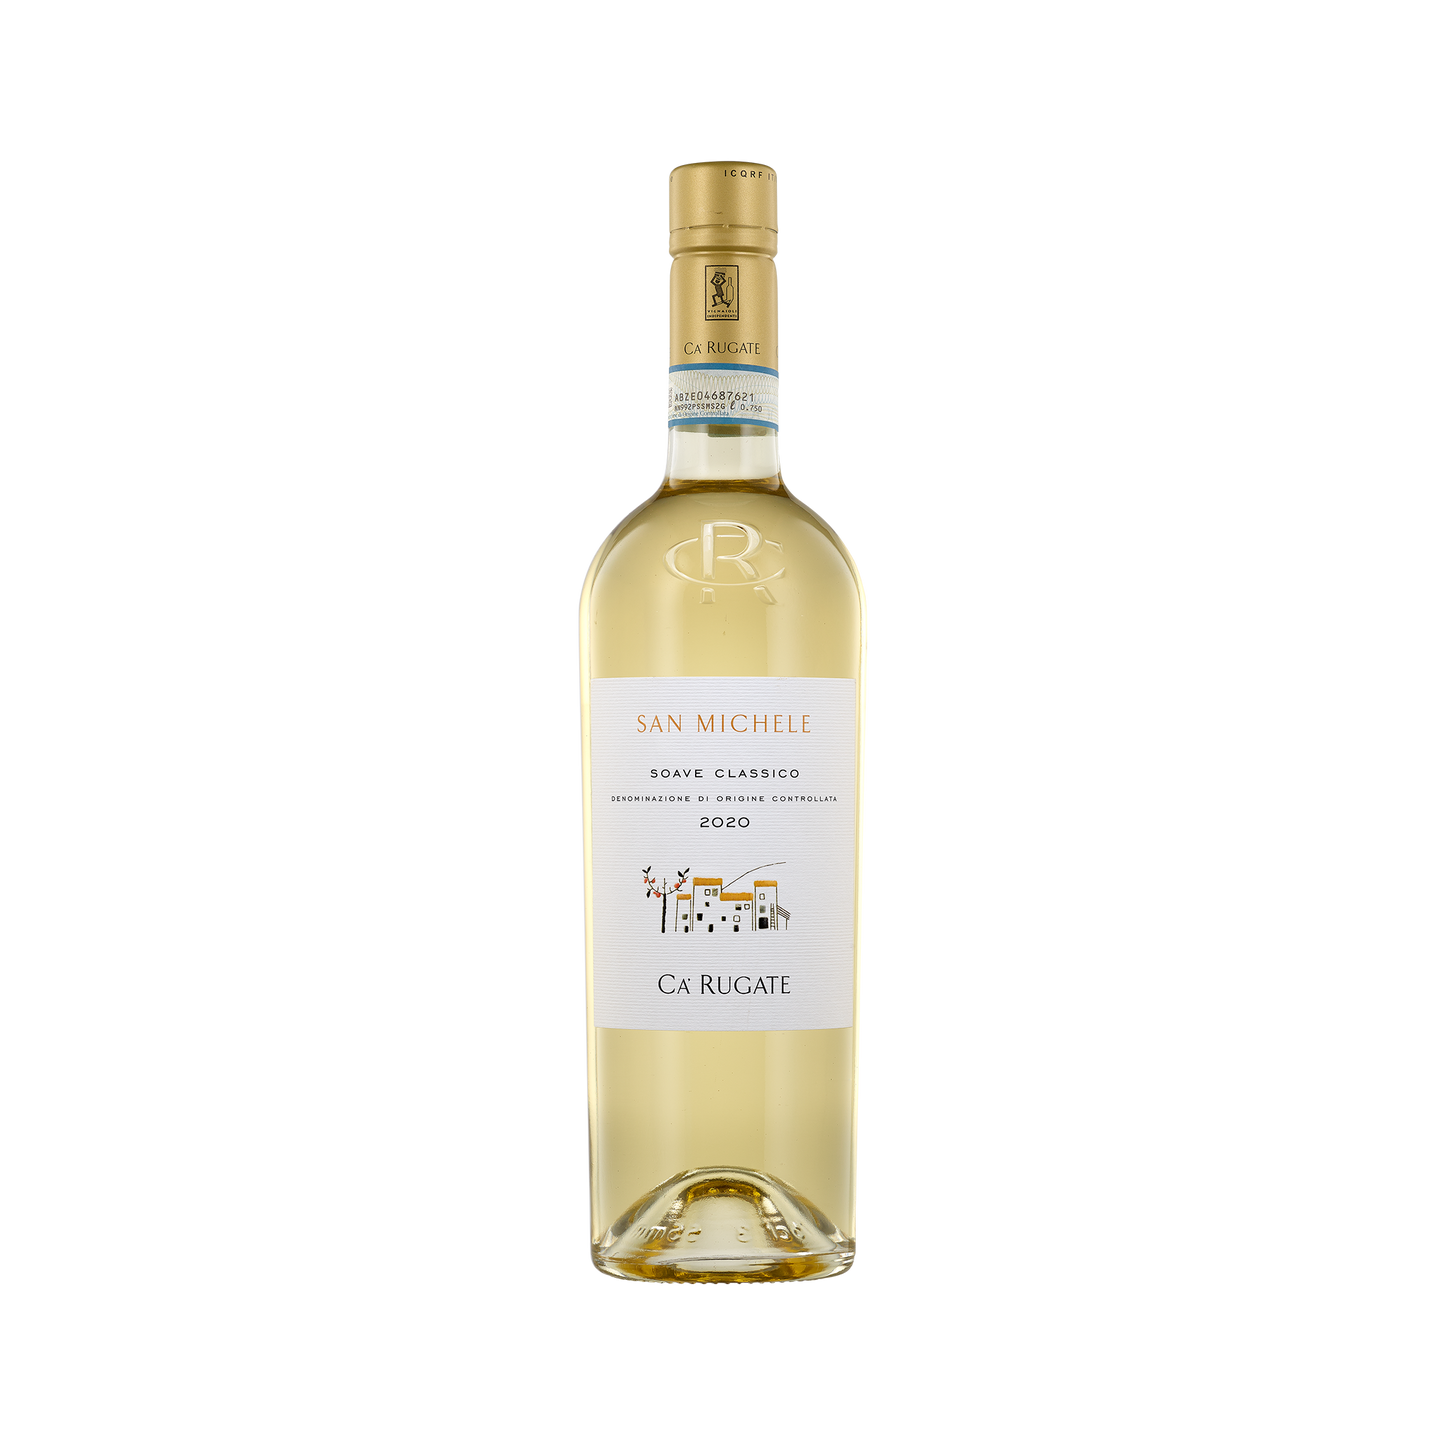 A bottle of Ca Rugate 2020 'San Michele' Soave Classico